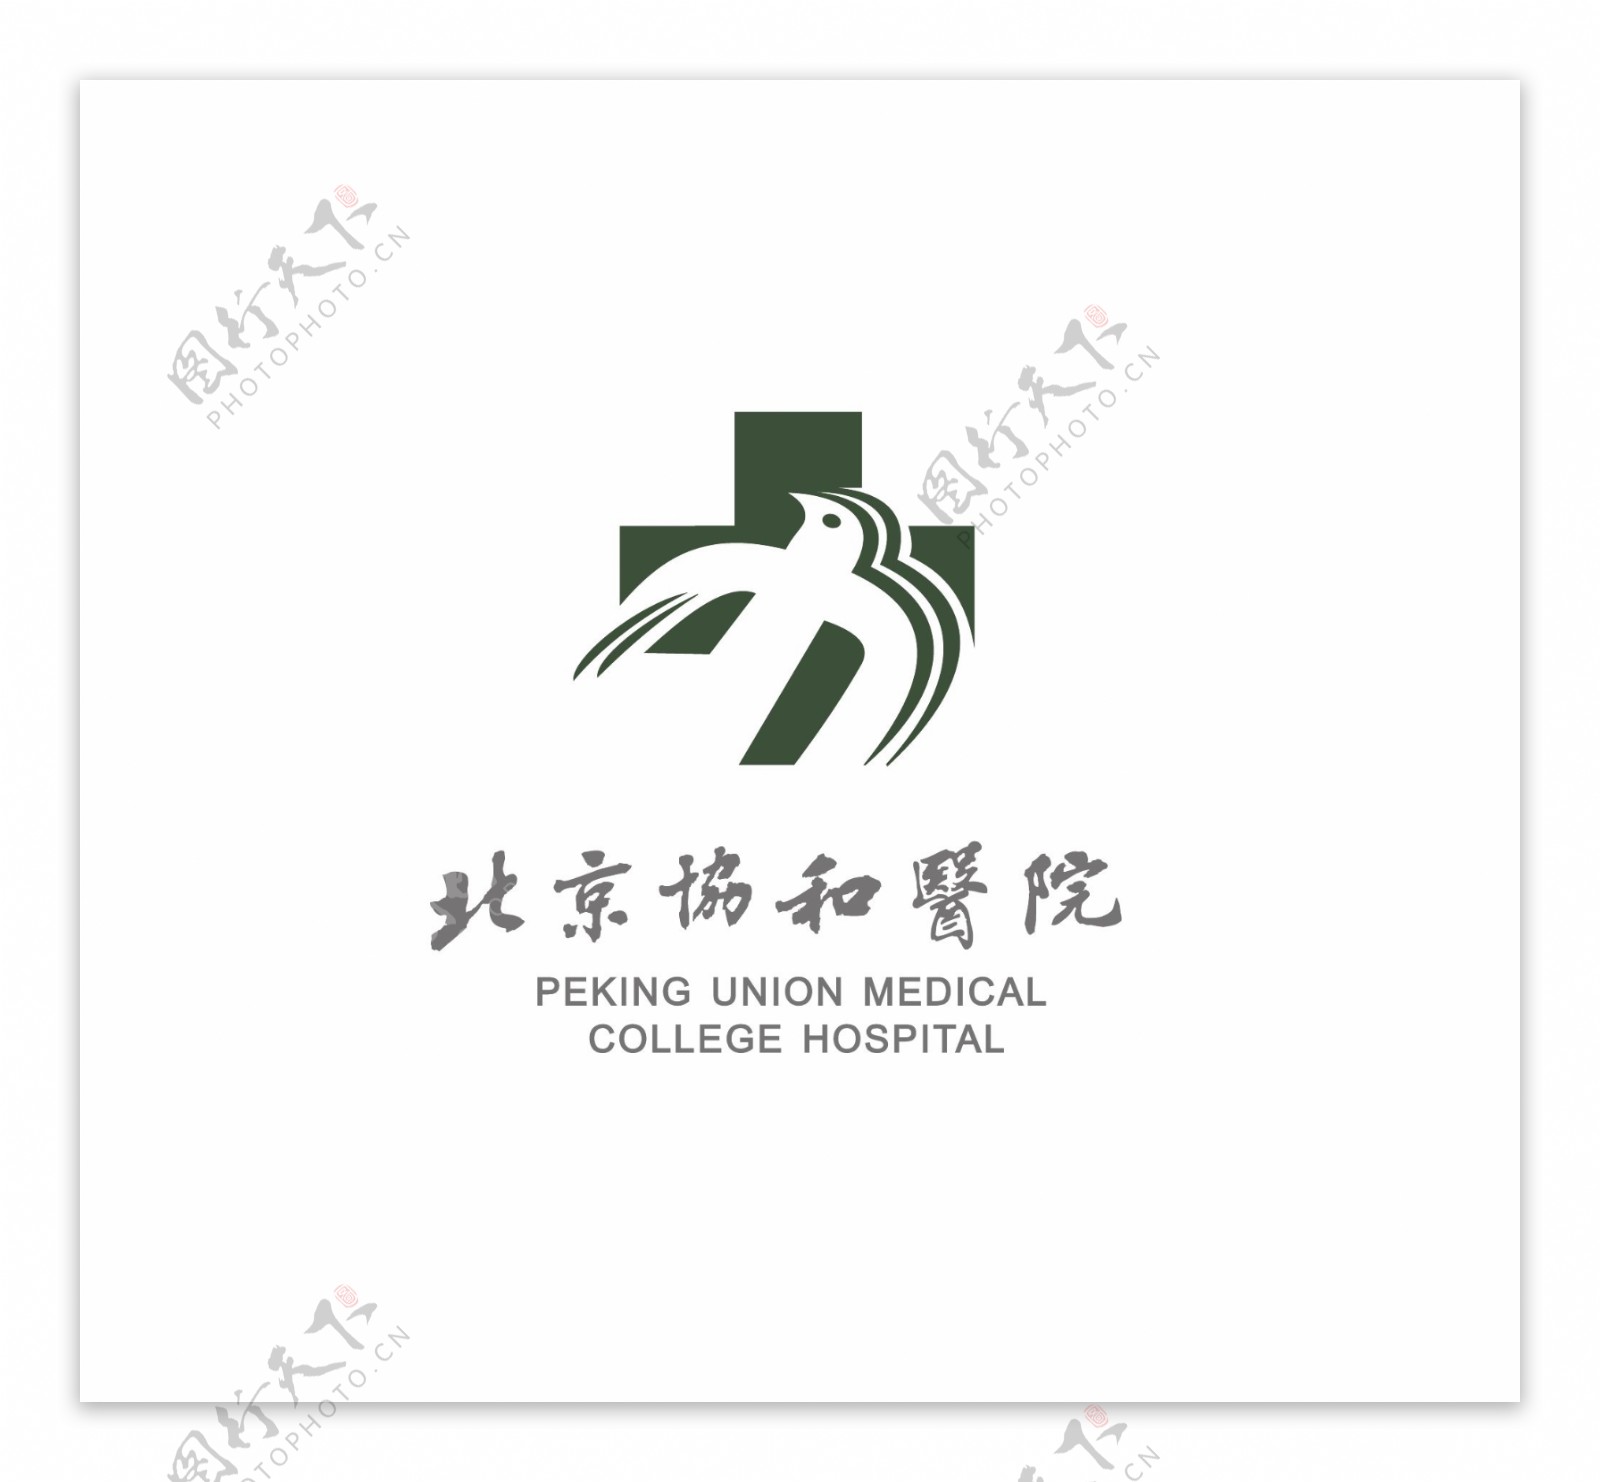 协和医院logo